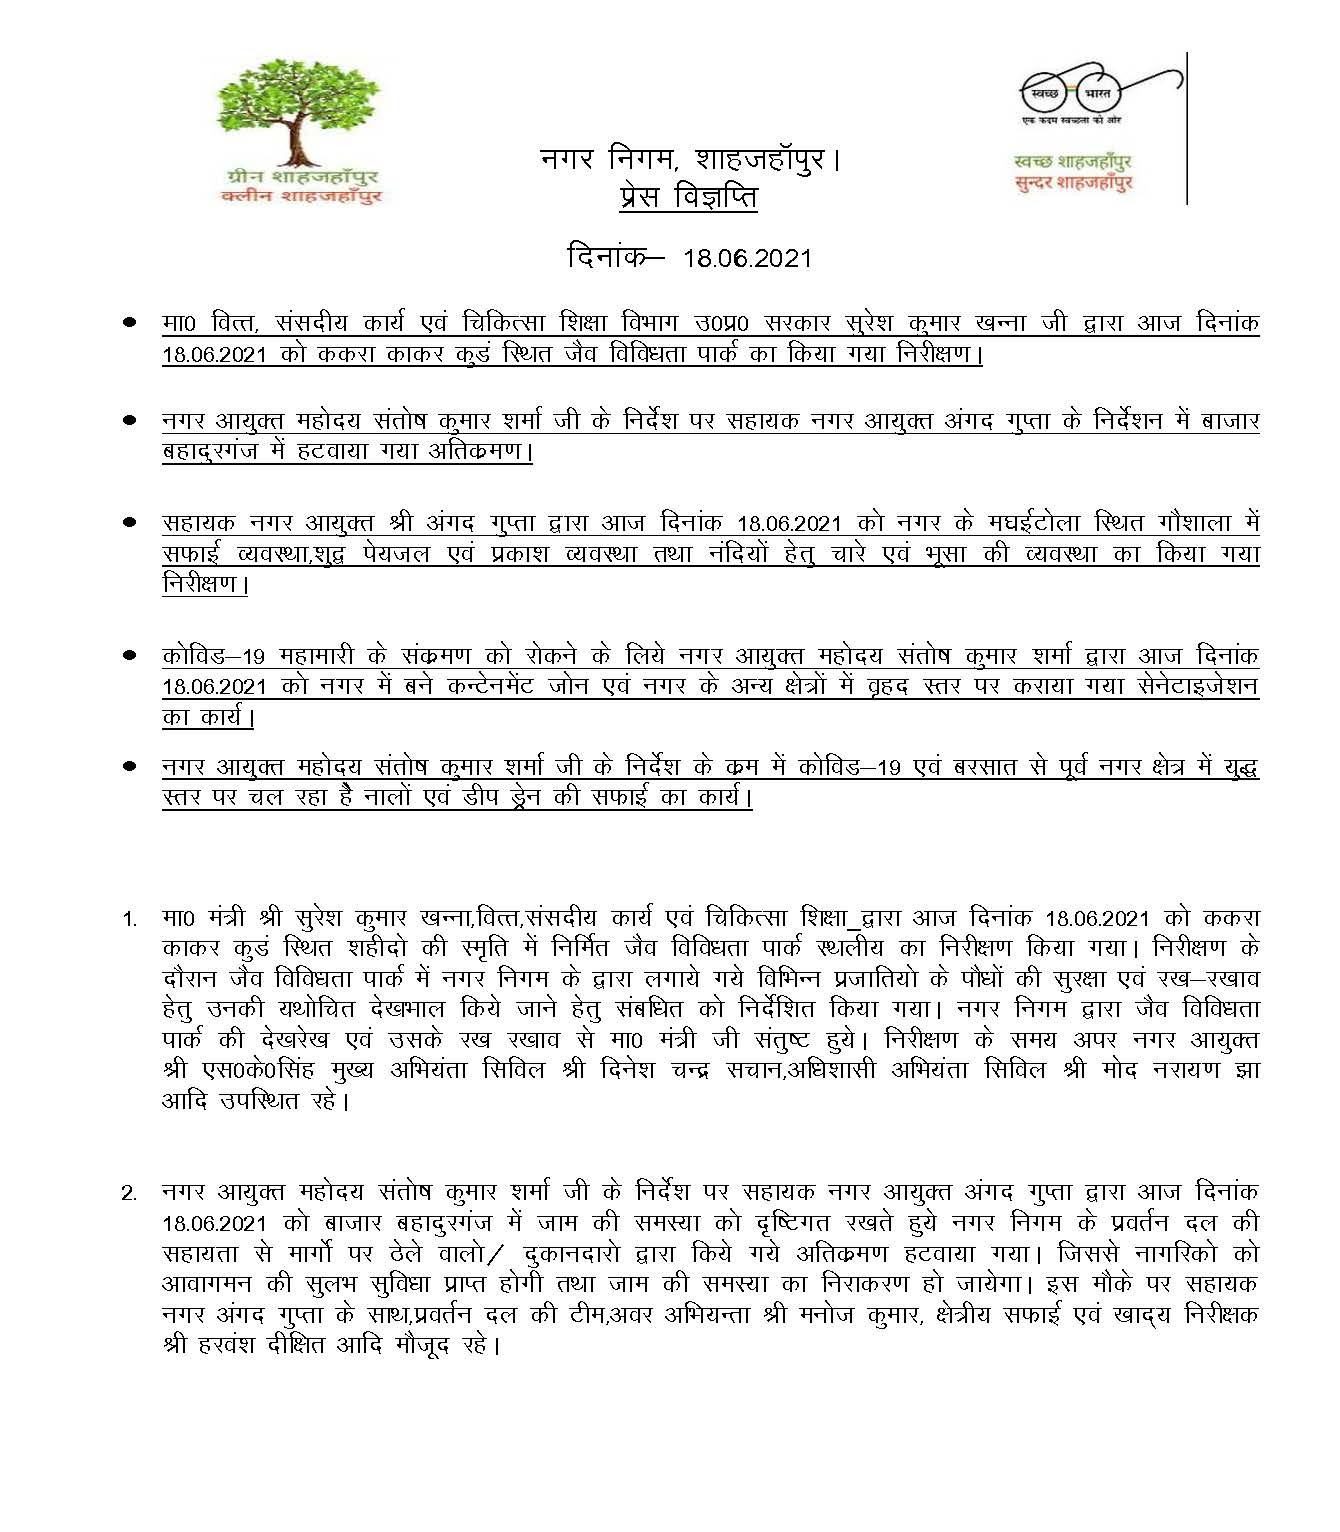 news 18-06-2021 – मा0 मंत्री, श्री सुरेश कुमार खन्ना जी द्वारा दिनांक 18-06-2021 को जैव विविधता पार्क का किया गया निरीक्षण।